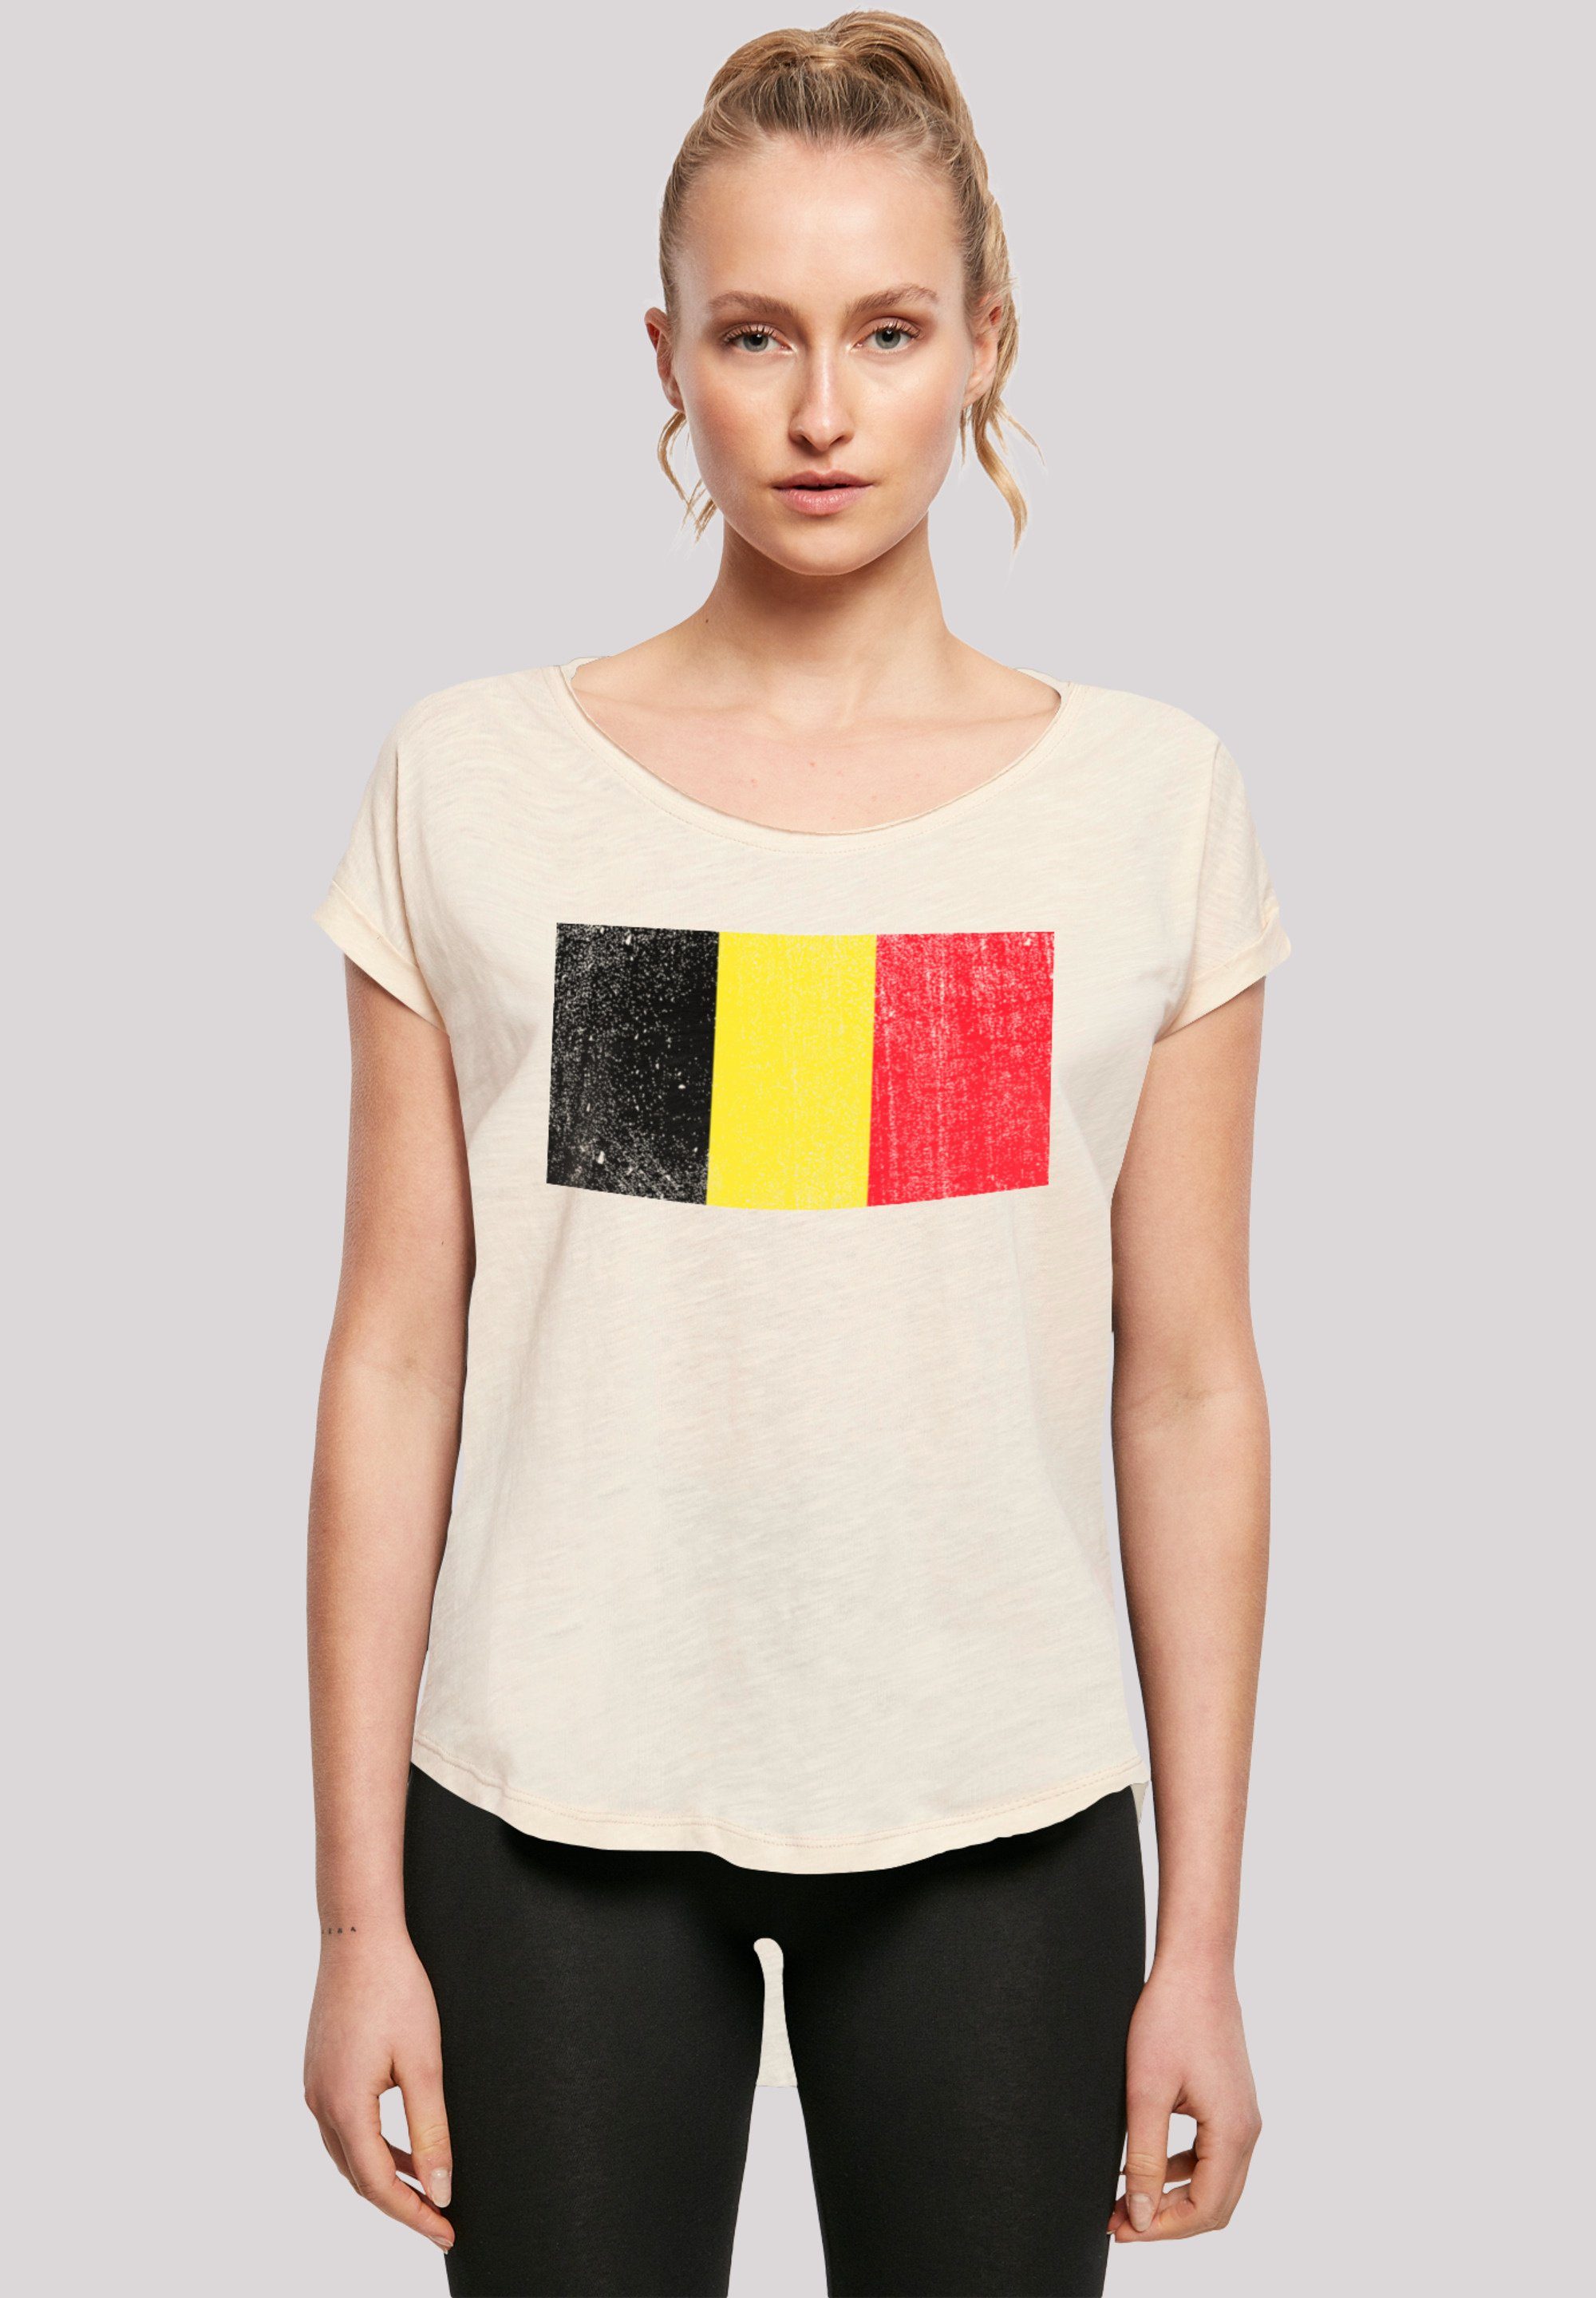 Print, Belgium Flagge hohem T-Shirt Tragekomfort weicher F4NT4STIC mit Belgien Sehr Baumwollstoff